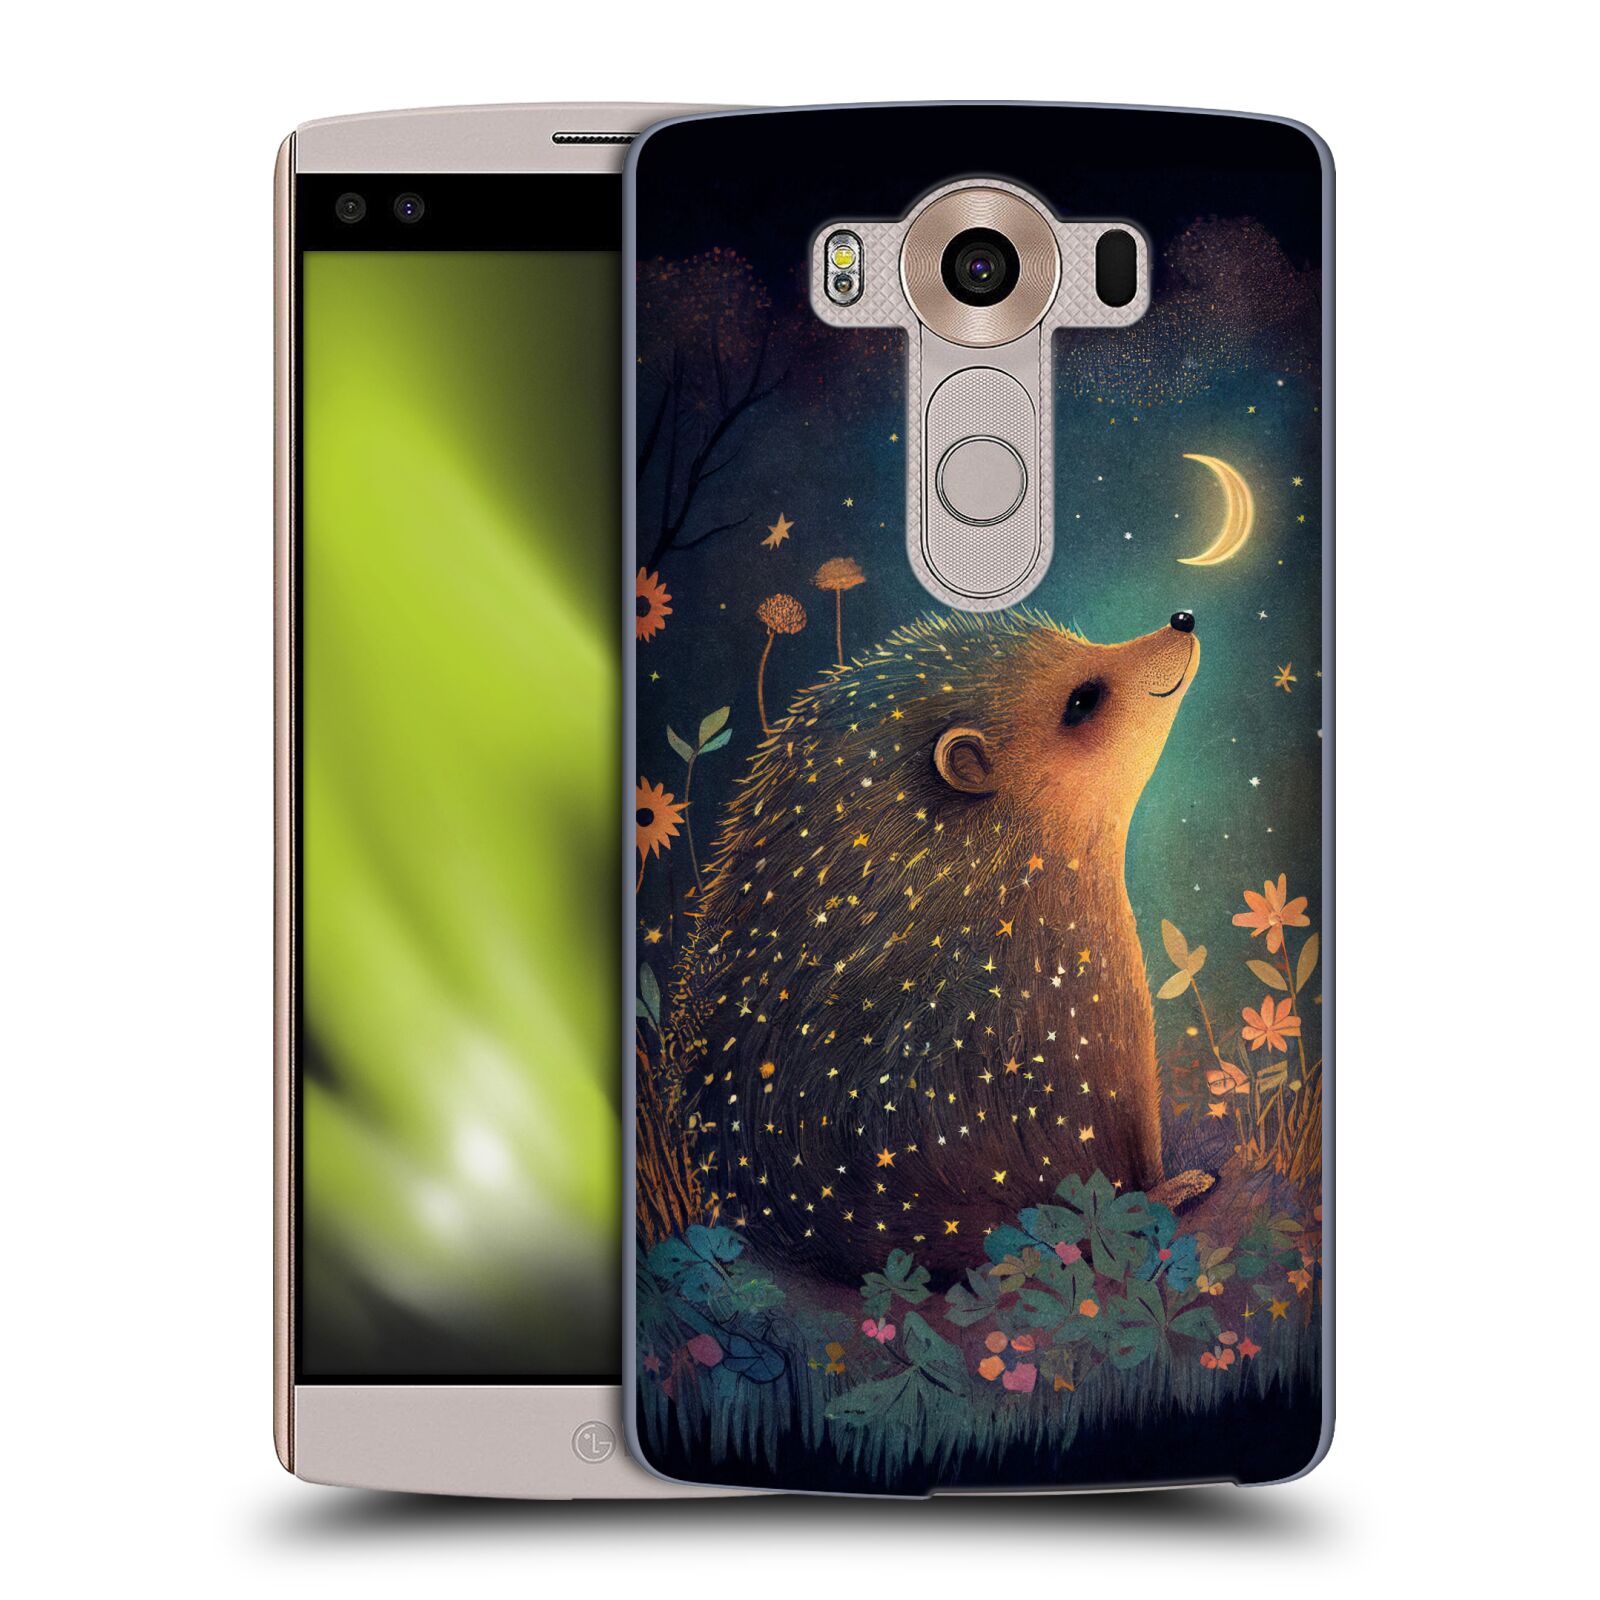 Obal na mobil LG V10 - HEAD CASE - JK Stewart malý ježeček